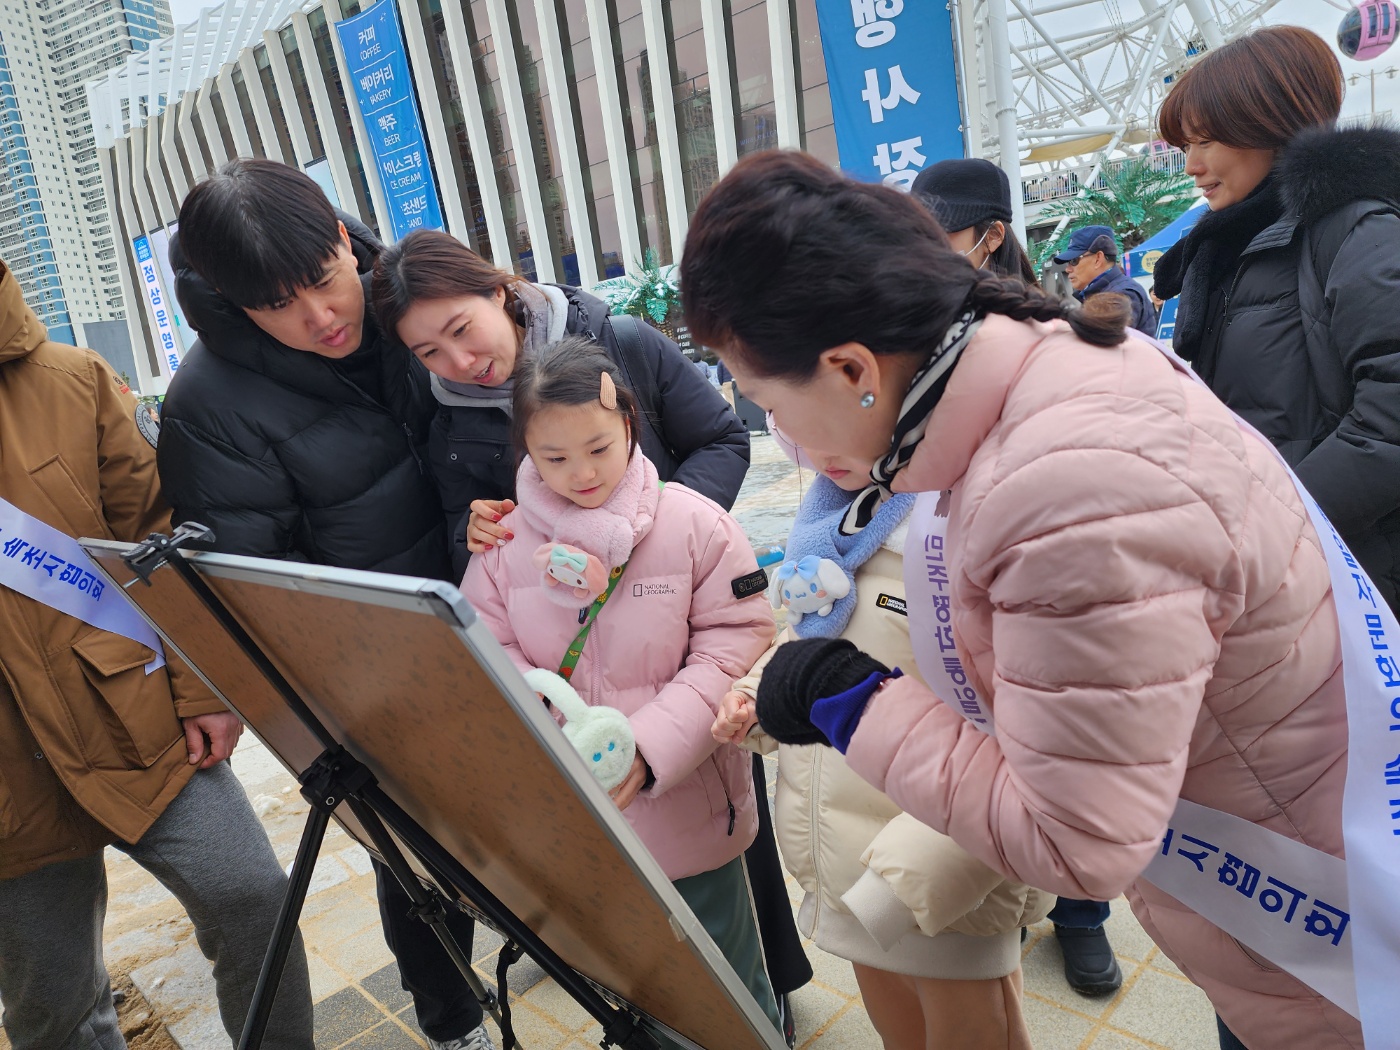 북한말 알아맞히기에 참가중인 가족들 모습